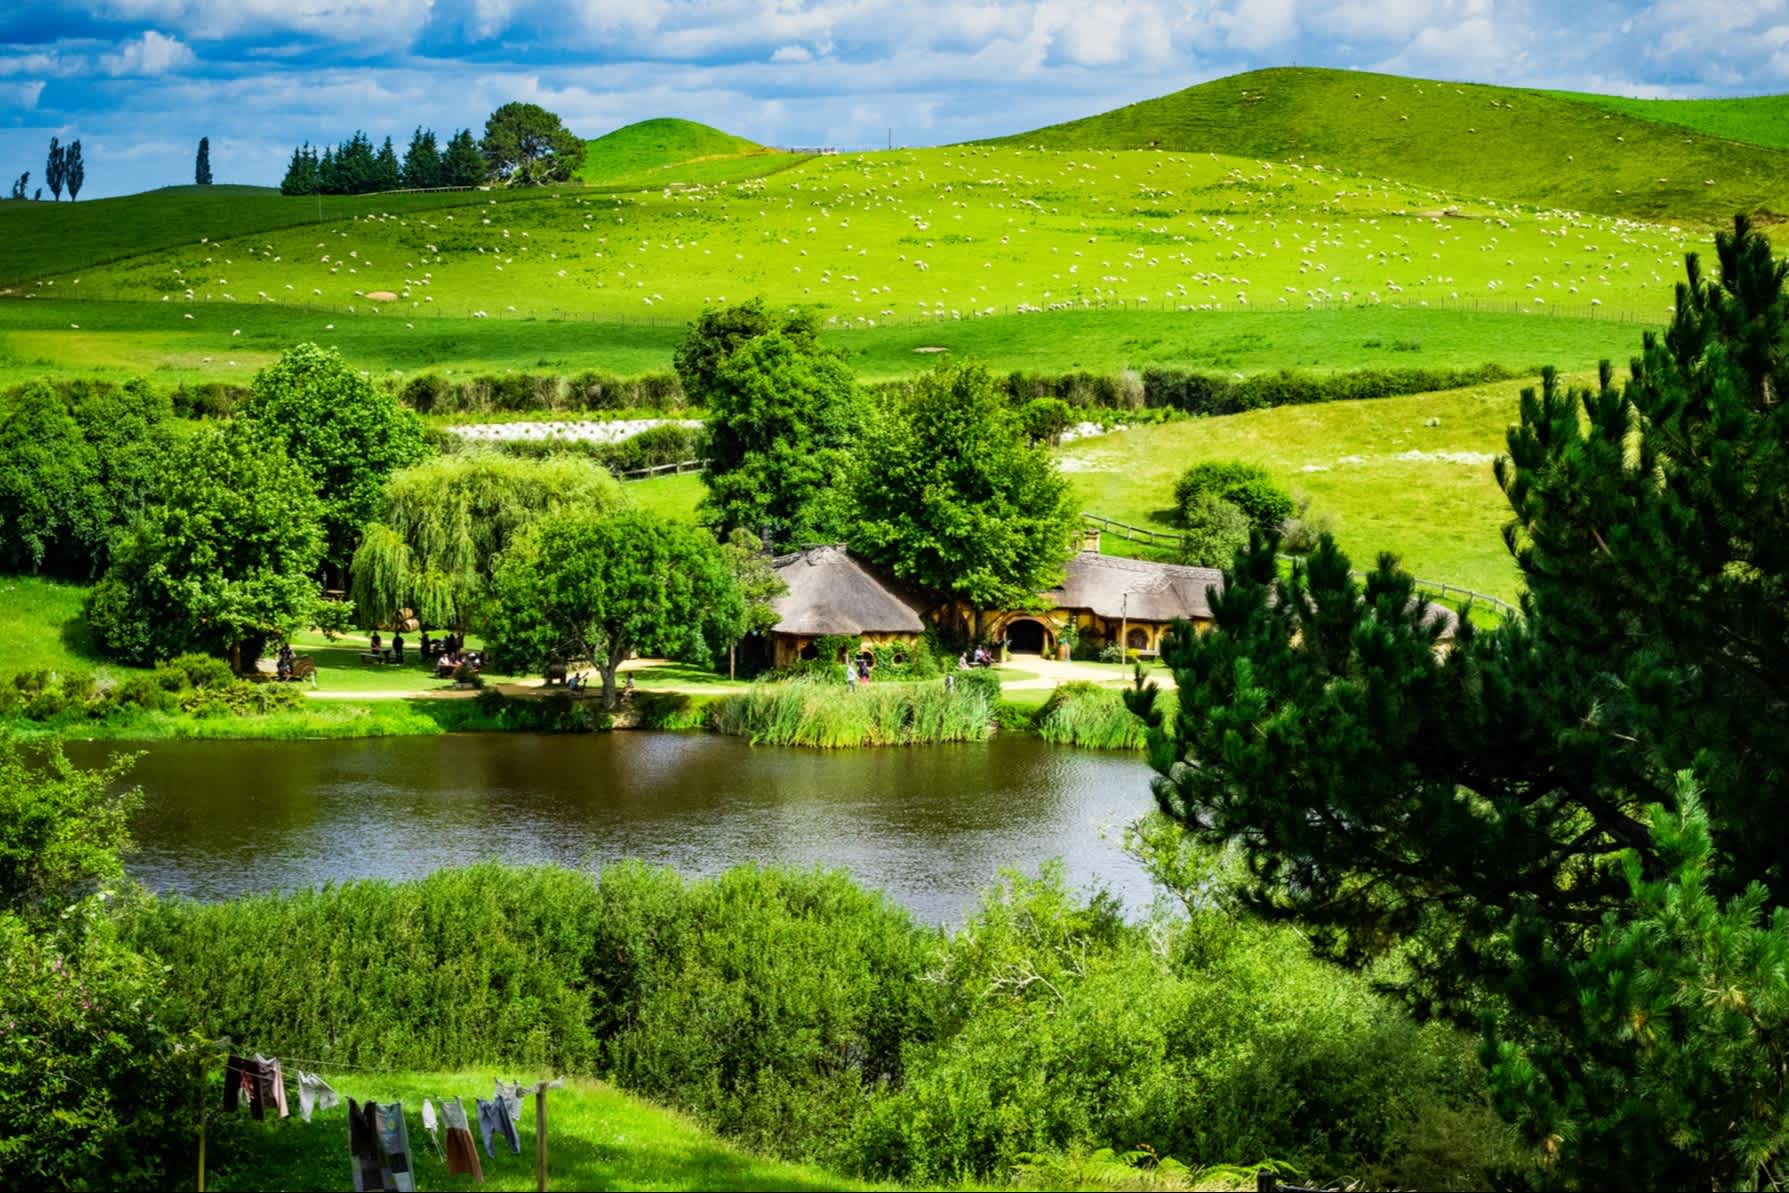 Le panorama du lieu de tournage de Hobbiton, Waikato, Nouvelle-Zélande.